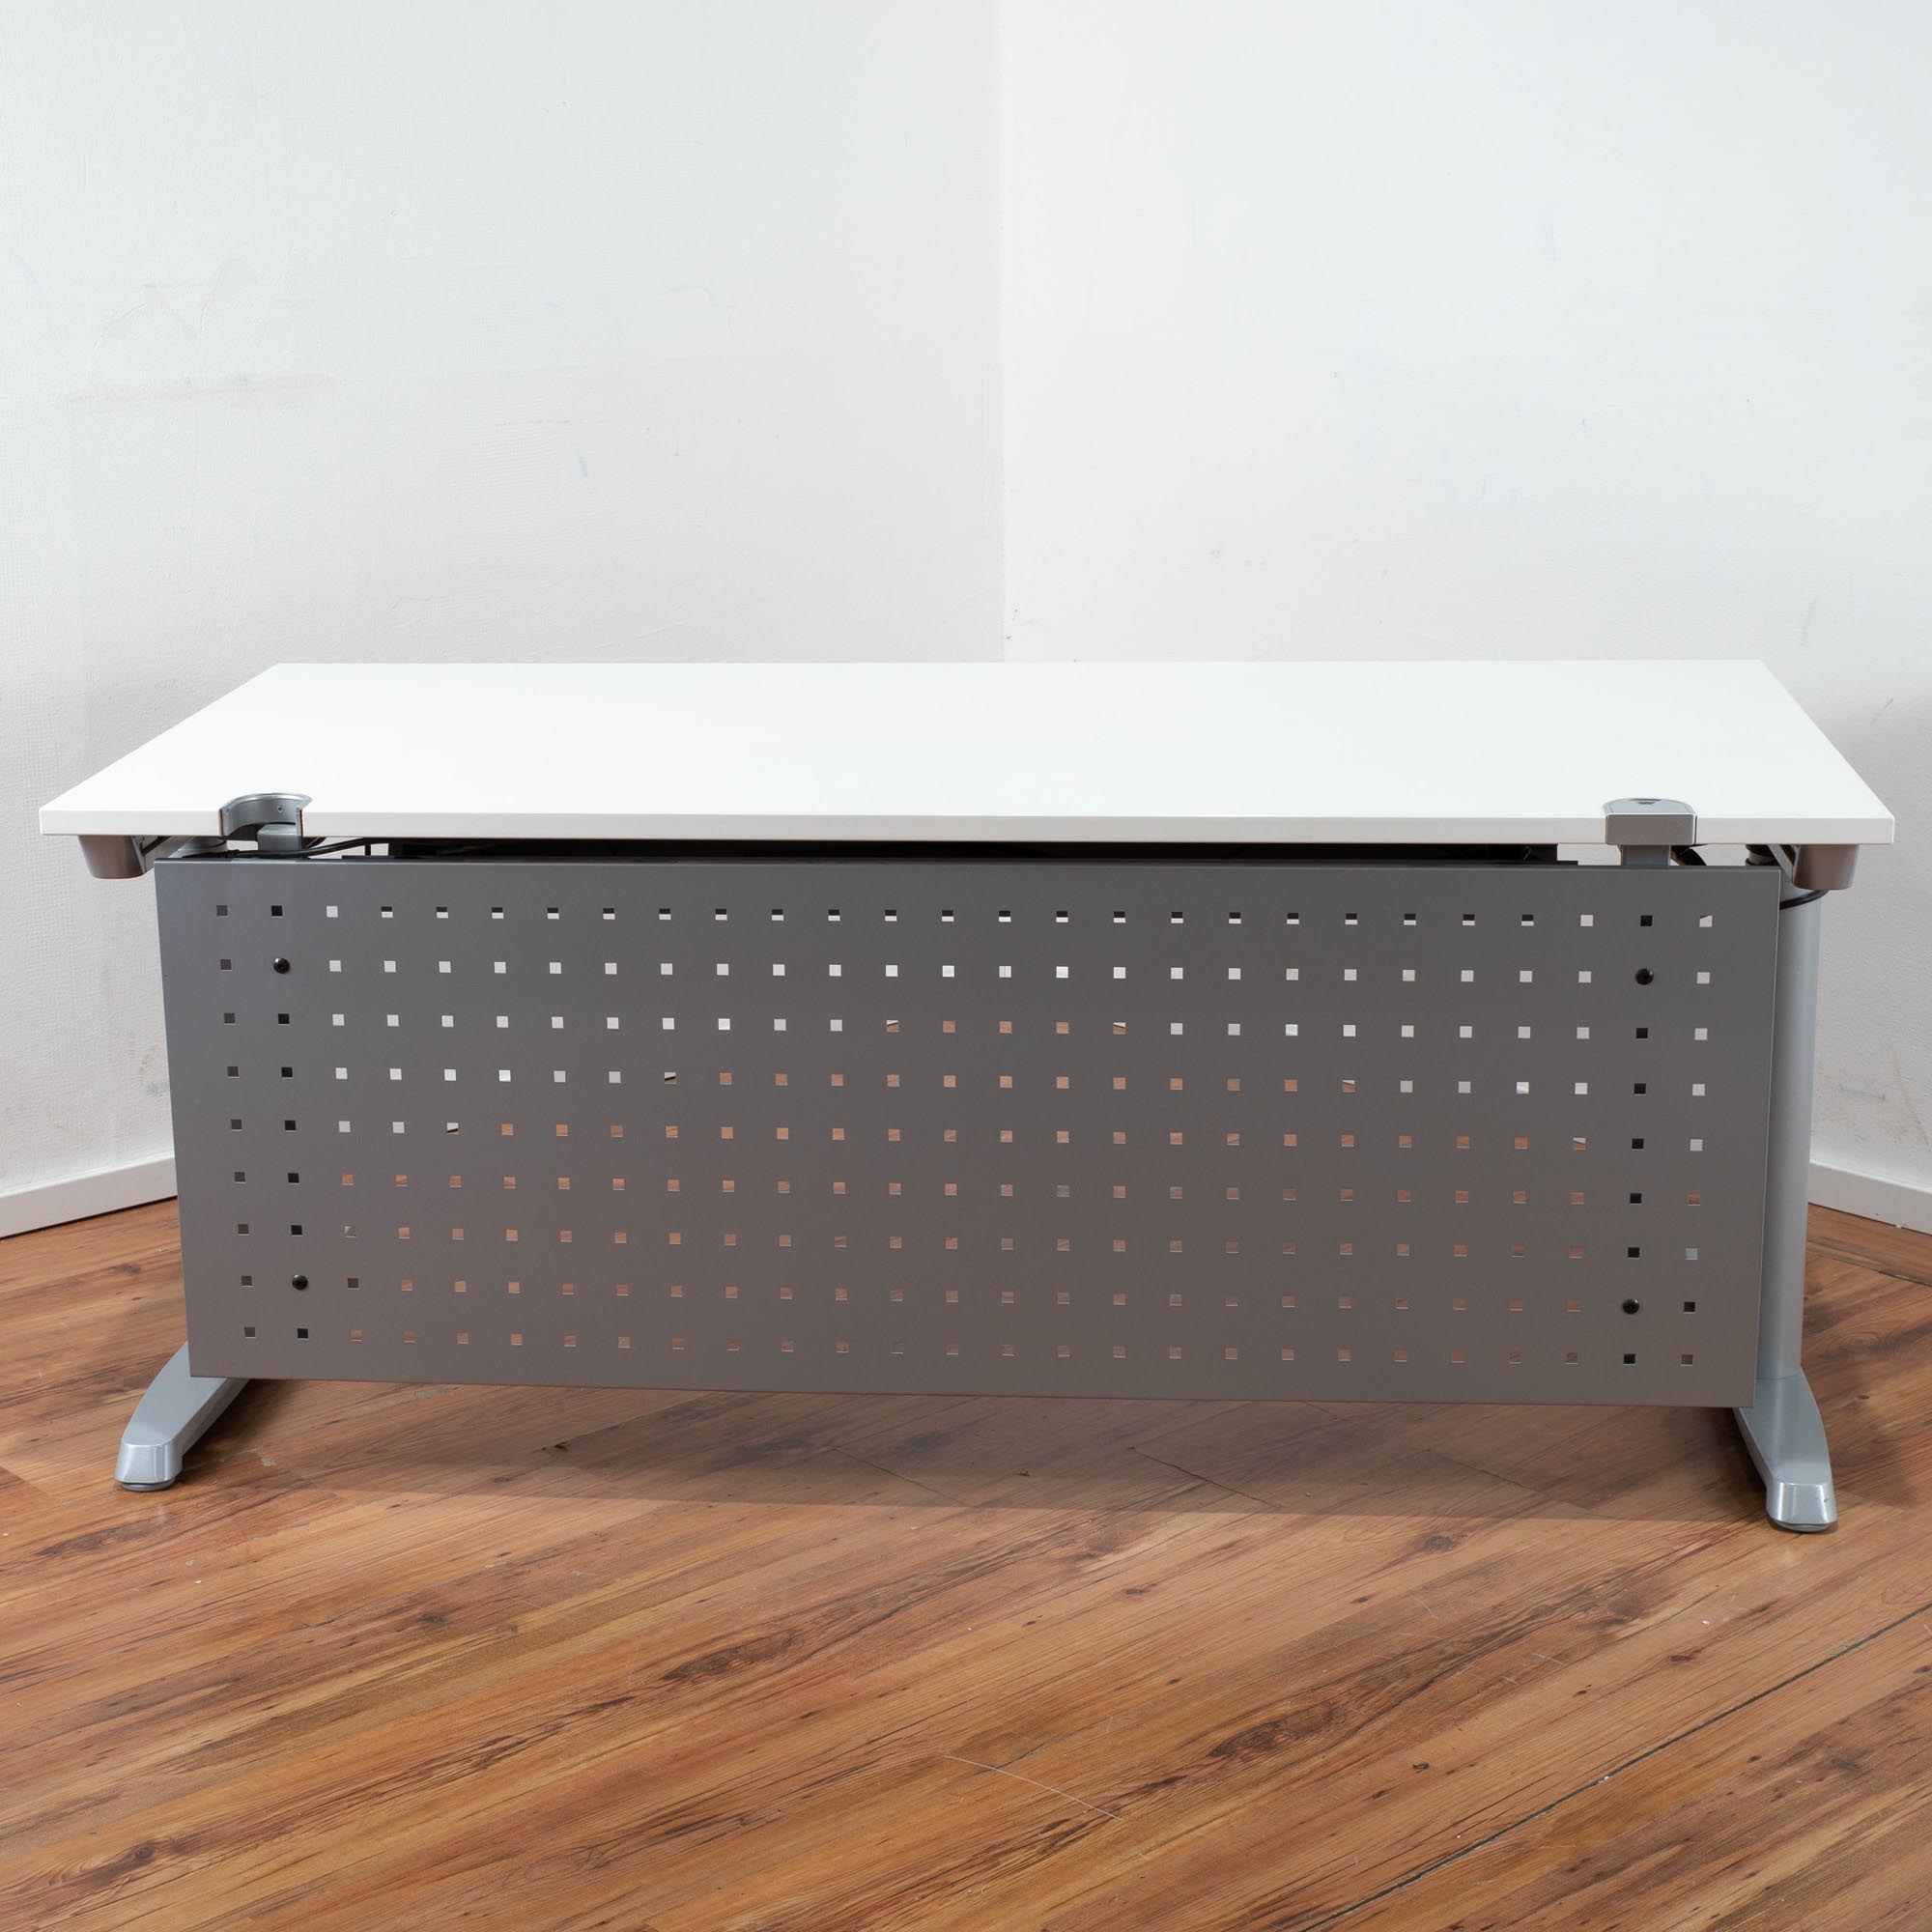 Hund E-Schreibtisch weiße Platte - 160 x 80 cm - T-Fußgestell Silber - Sichtblende gelocht 